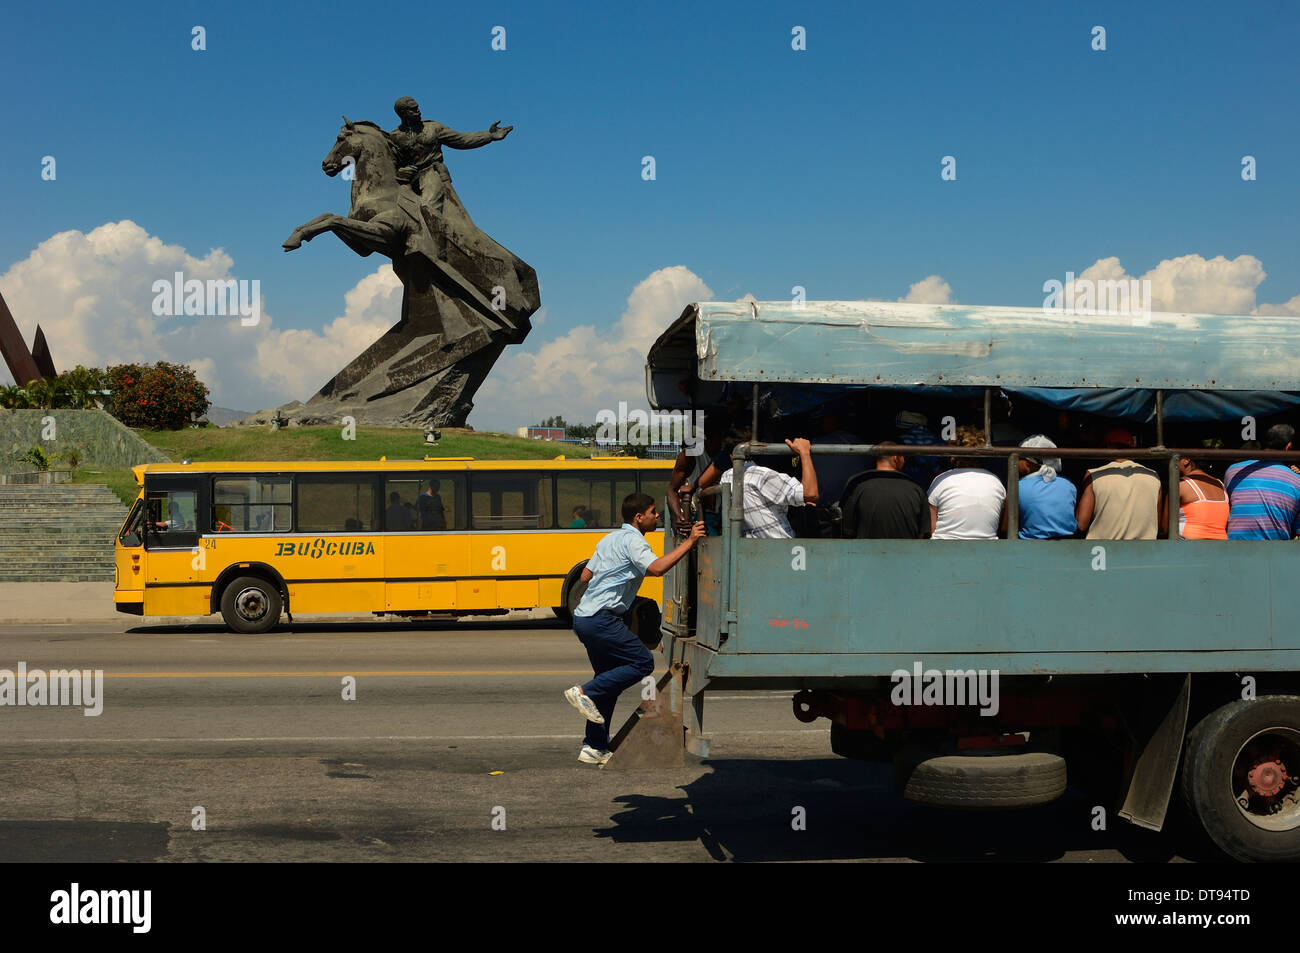 Ein Mann Boards eine sich bewegende Menschen tragen Fahrzeug außerhalb der Plaza De La Revolucion. Statue von Antonio Maceo. Santiago de Cuba, Kuba Stockfoto